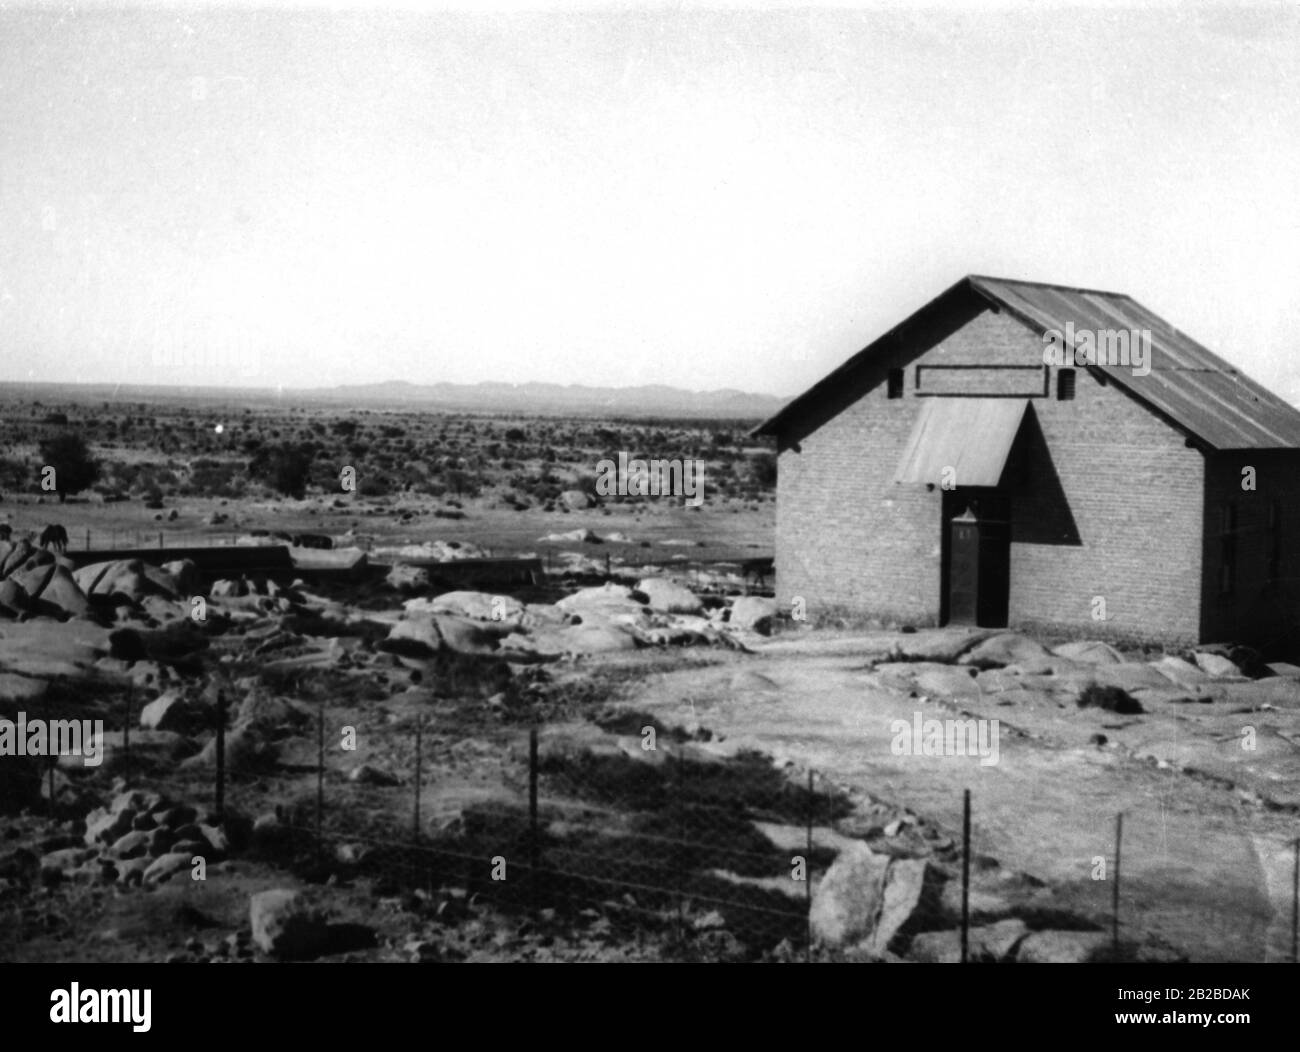 L'ex stazione militare tedesca Warmbad, dove nel 1904 iniziò la ribellione del popolo nativo Herero. Più tardi, divenne altamente stimato come centro termale per le sue sorgenti sulfuree. Foto Stock